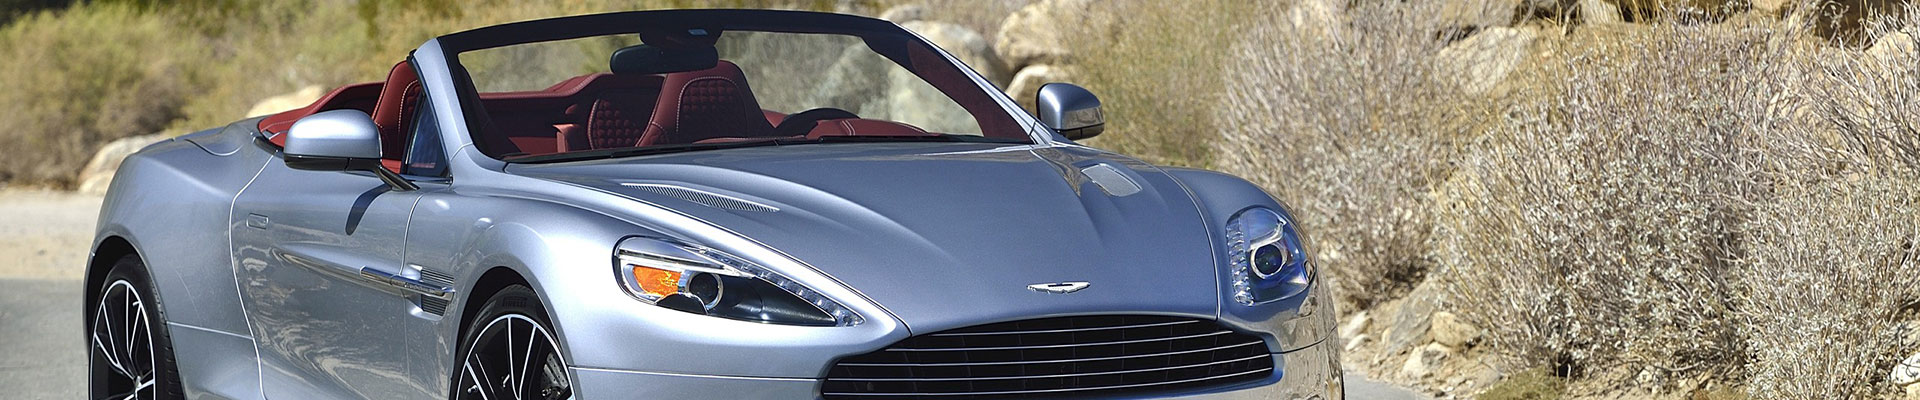 Aston Martin autoverzekering